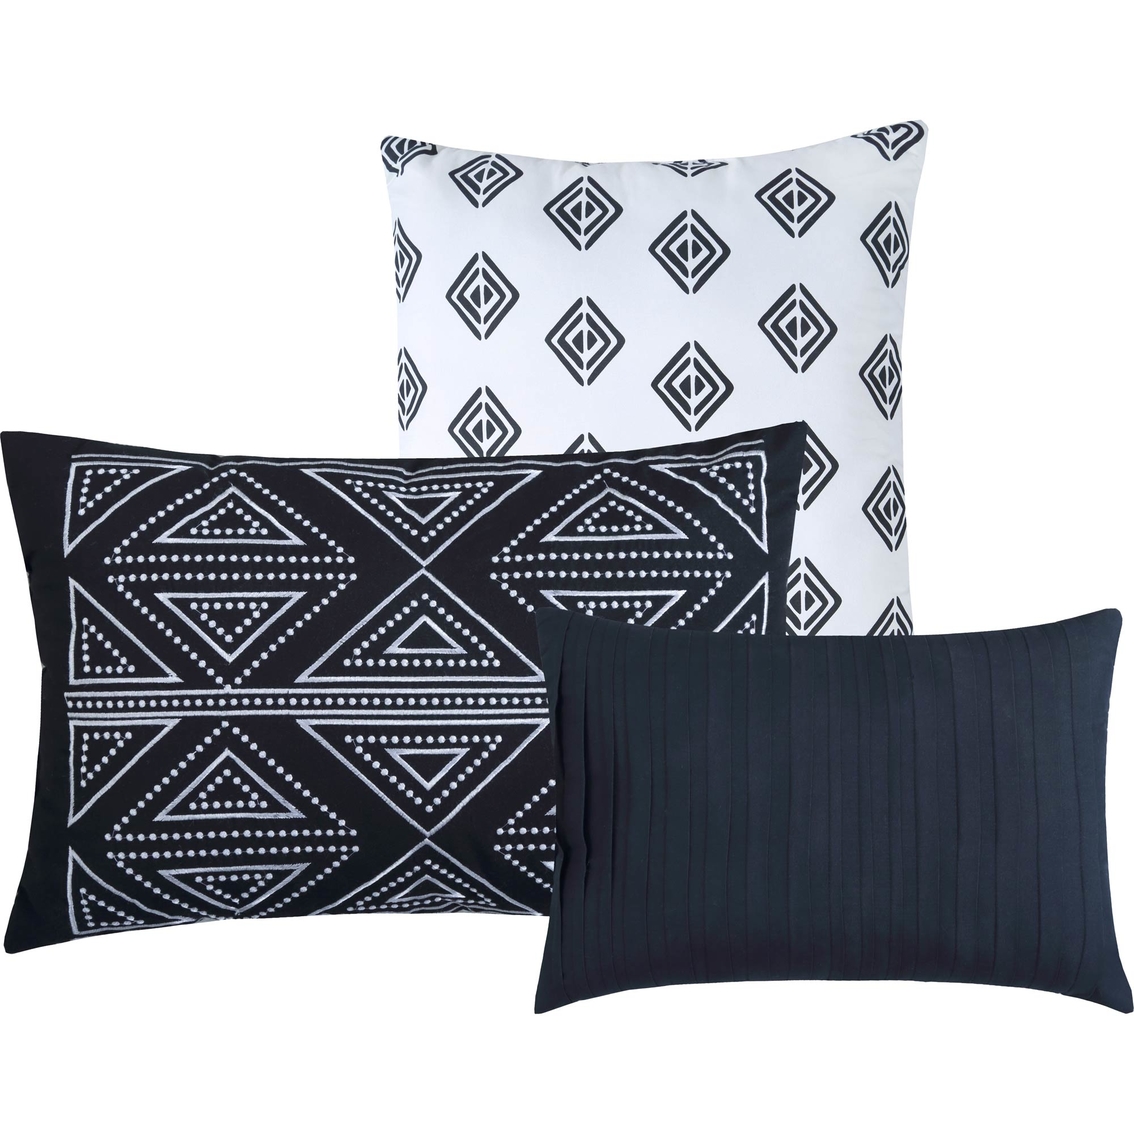 Royale Linens Kenya 7 Piece Comforter Set - Image 3 of 4